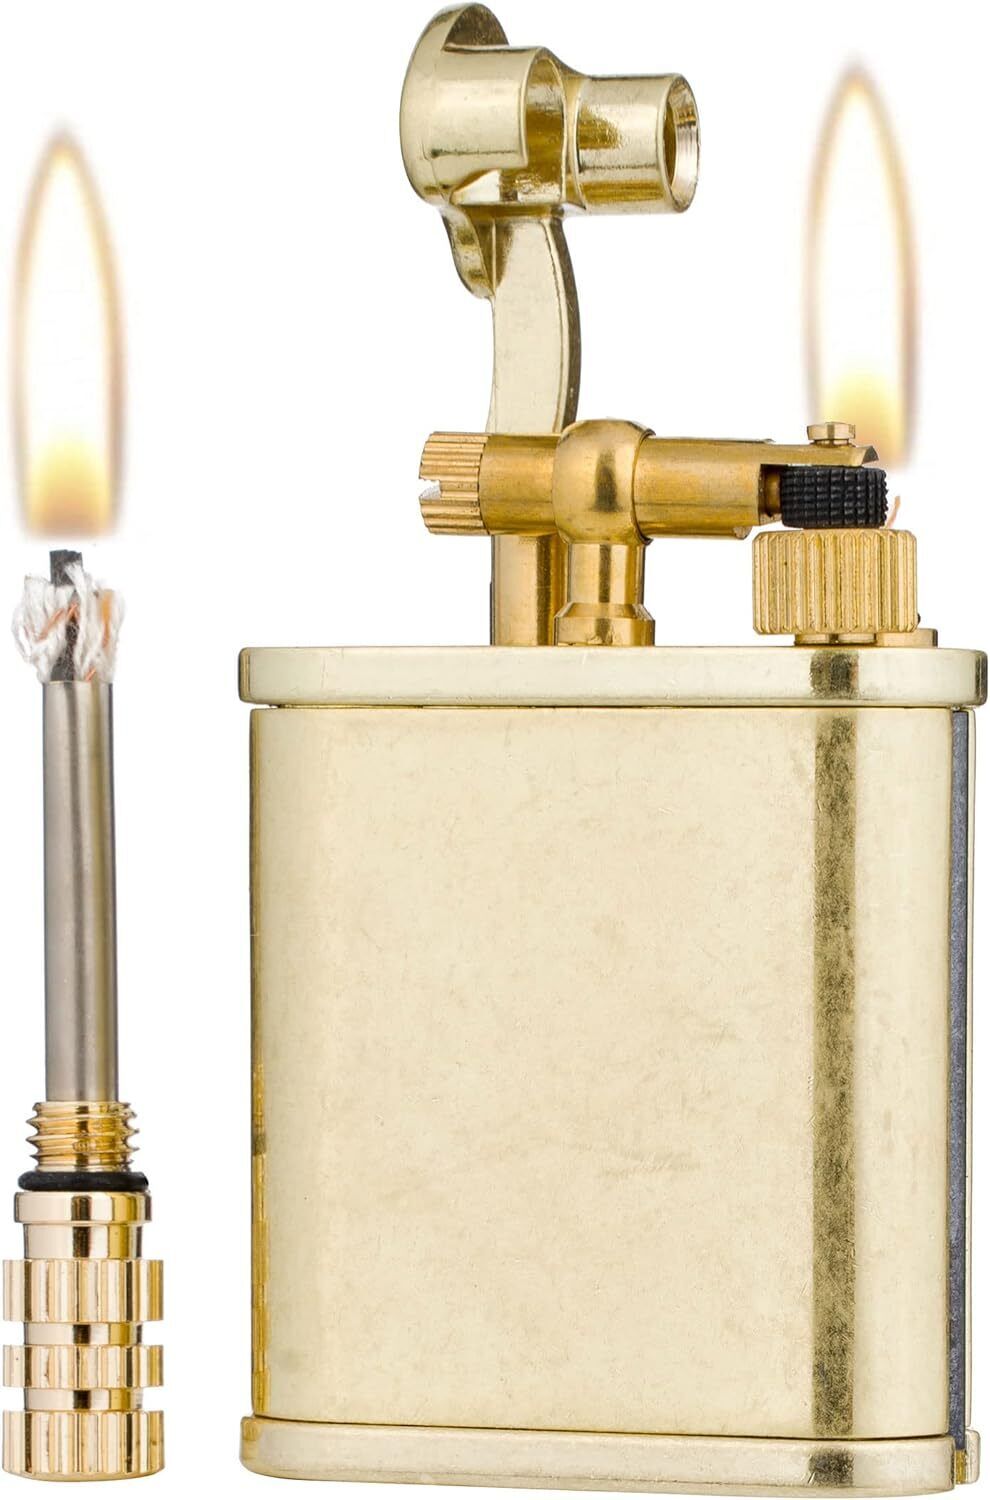 2 in 1 Lighetr Permanent Match Antique Style Lift Arm Kerosene Lighter Bronze